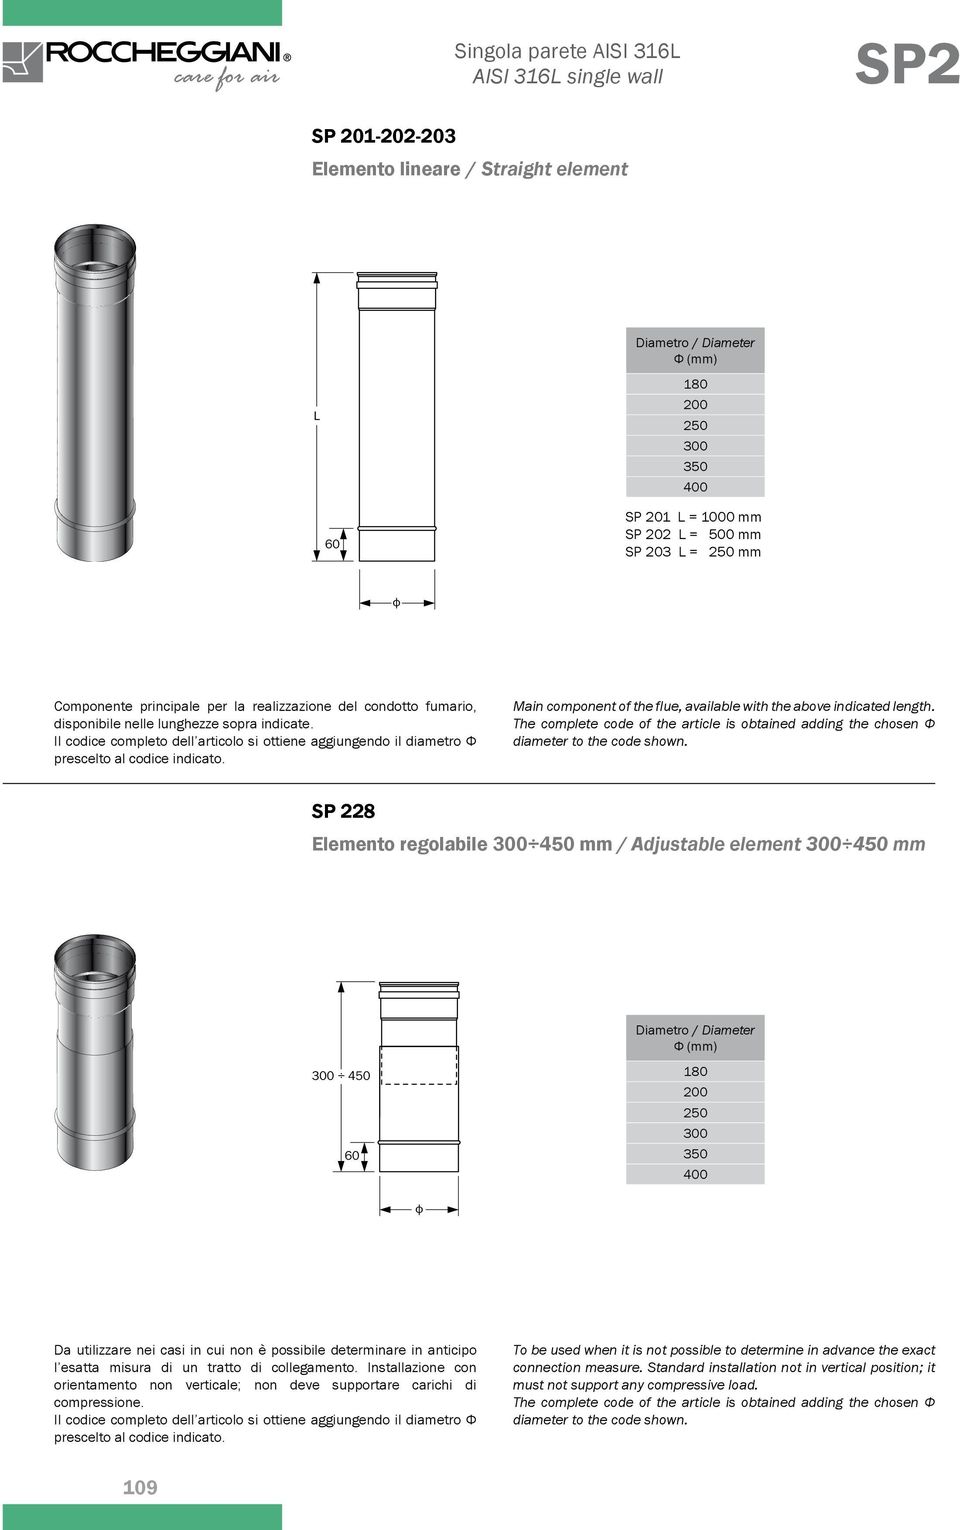 SP 228 Elemento regolabile 450 mm / djustable element 450 mm / Ф 450 Da utilizzare nei casi in cui non è possibile determinare in anticipo l esatta misura di un tratto di collegamento.